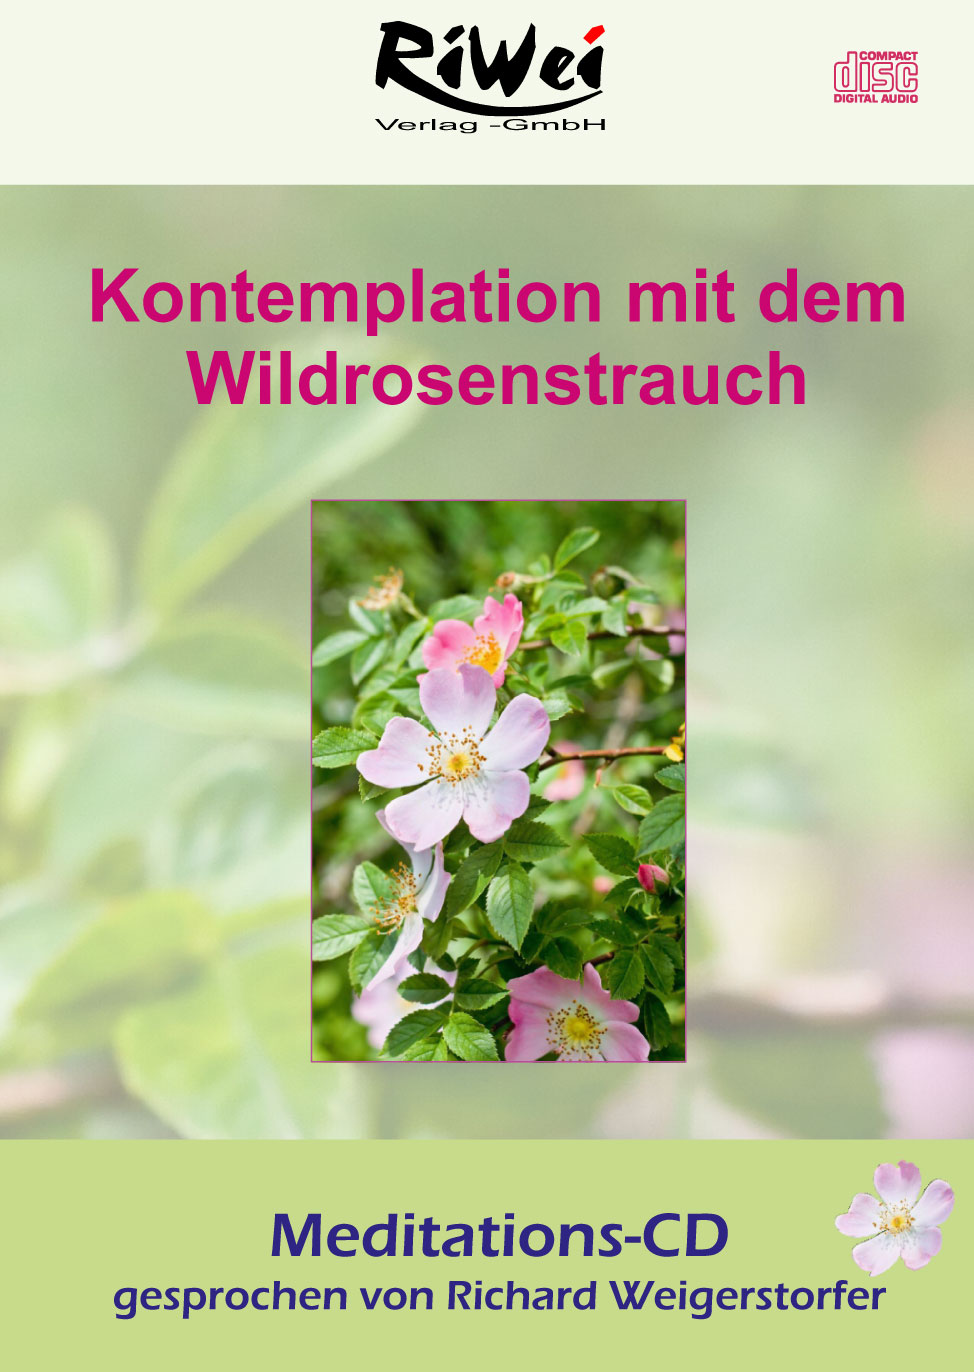 Richard Weigerstorfer - Kontemplation mit dem Wildrosenstrauch - AUDIO Meditation Download